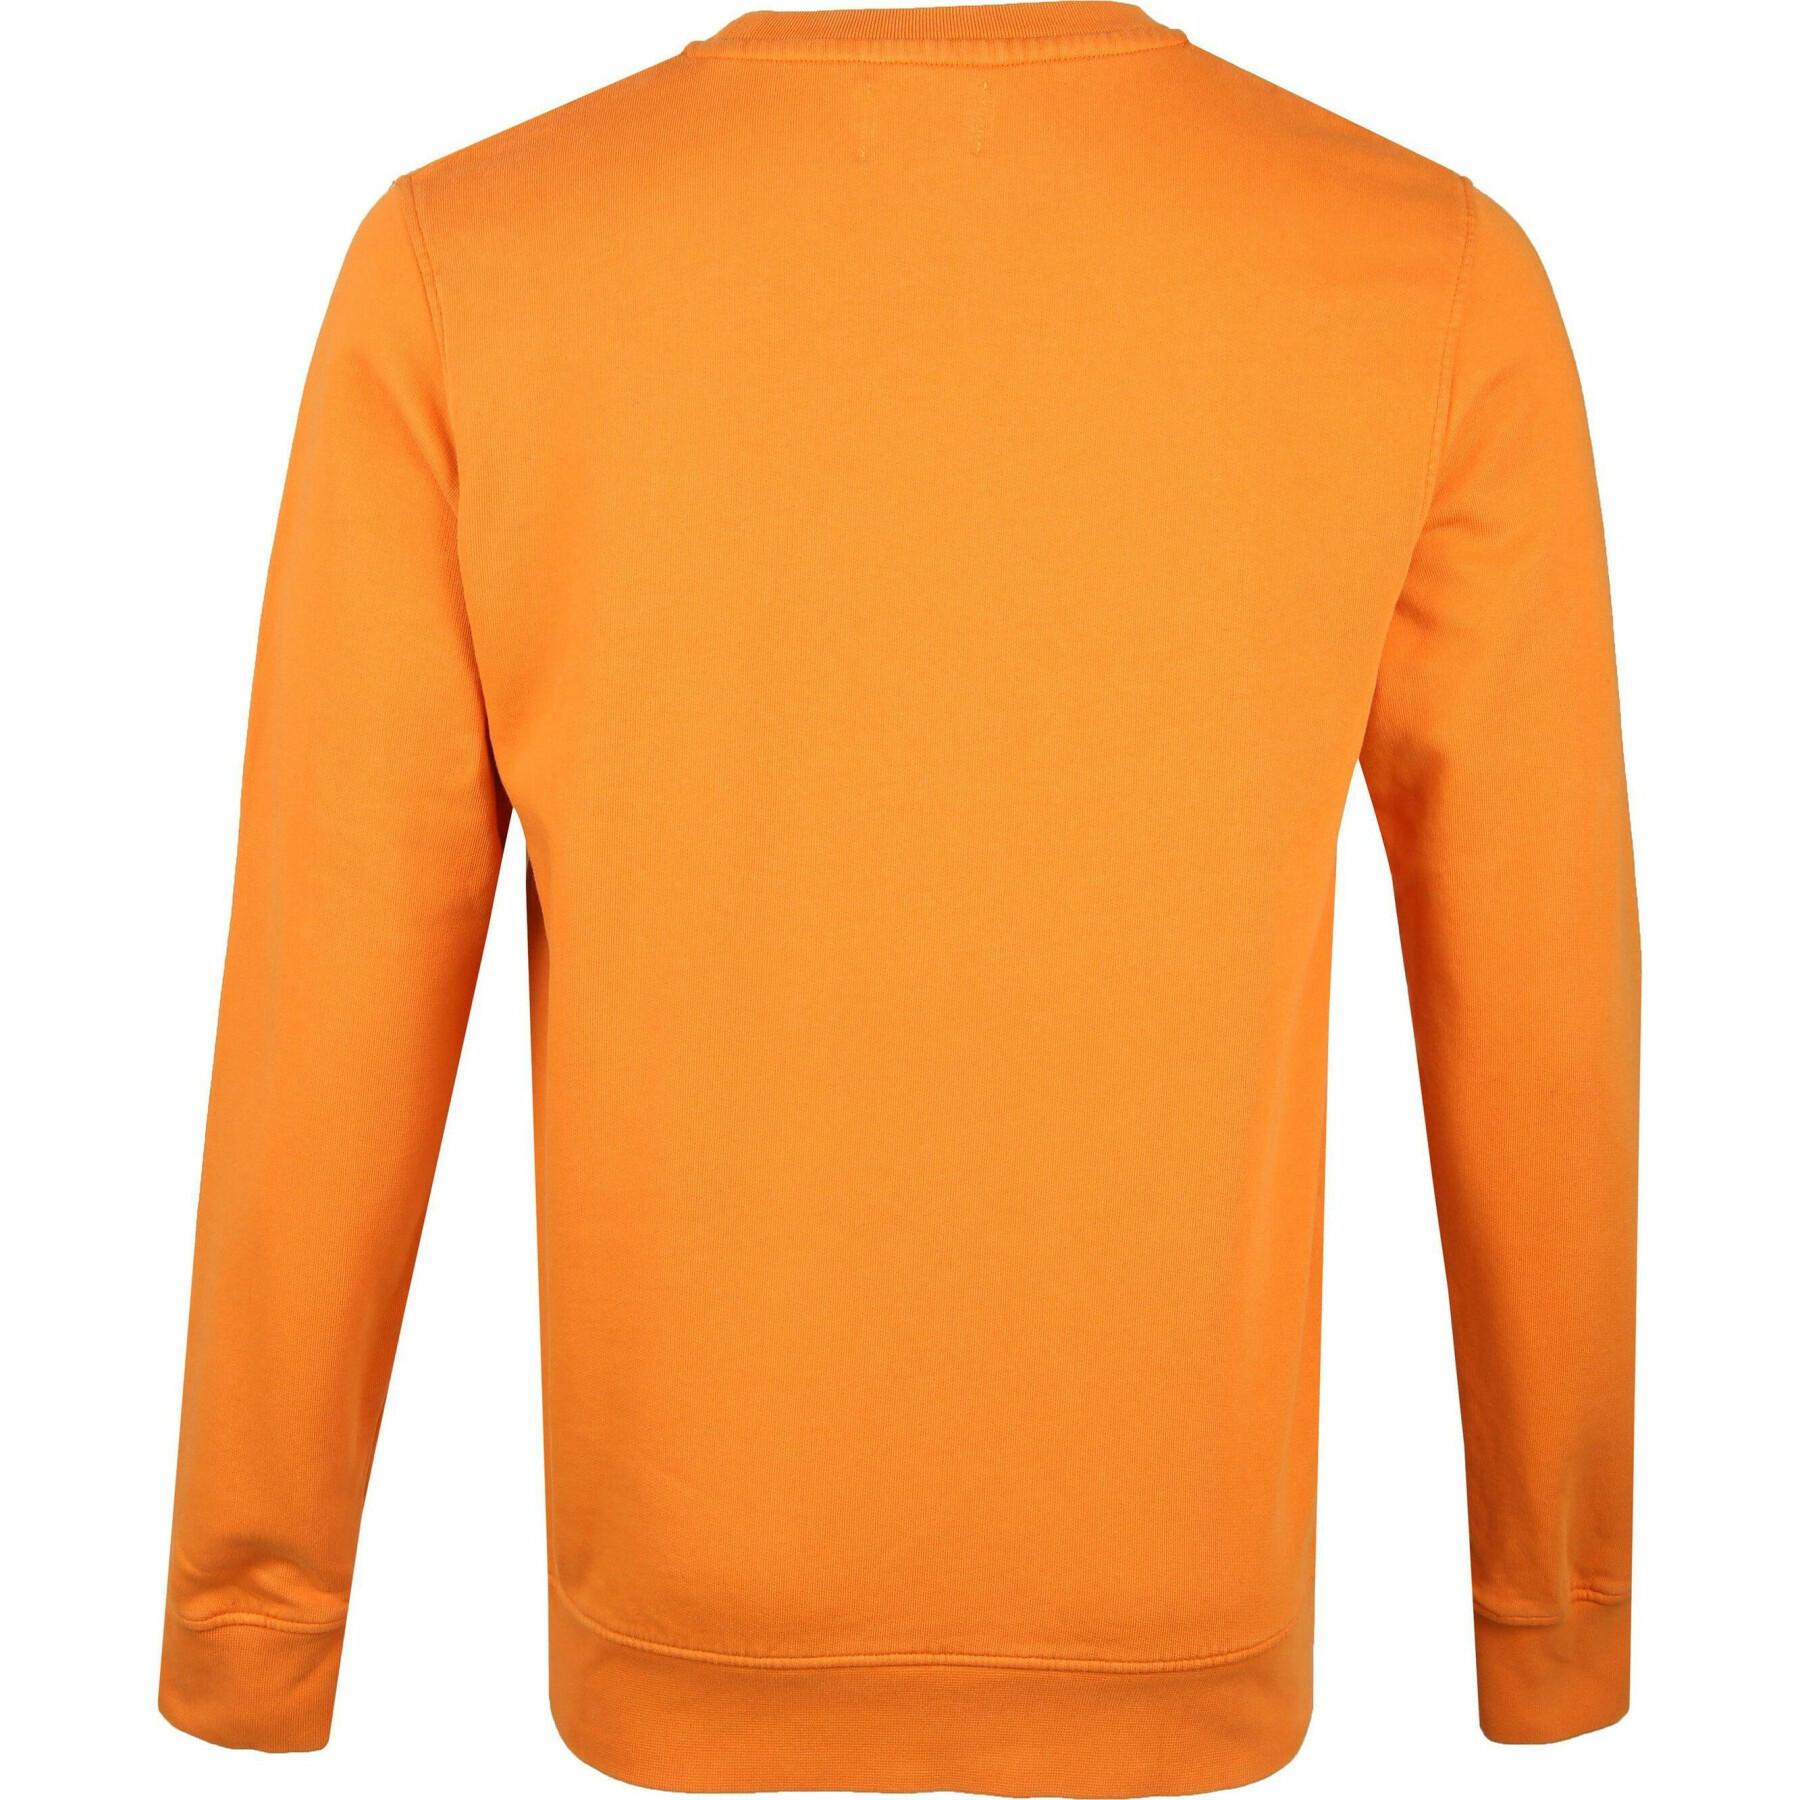 Bluza z okrągłym dekoltem Colorful Standard Classic Organic burned orange